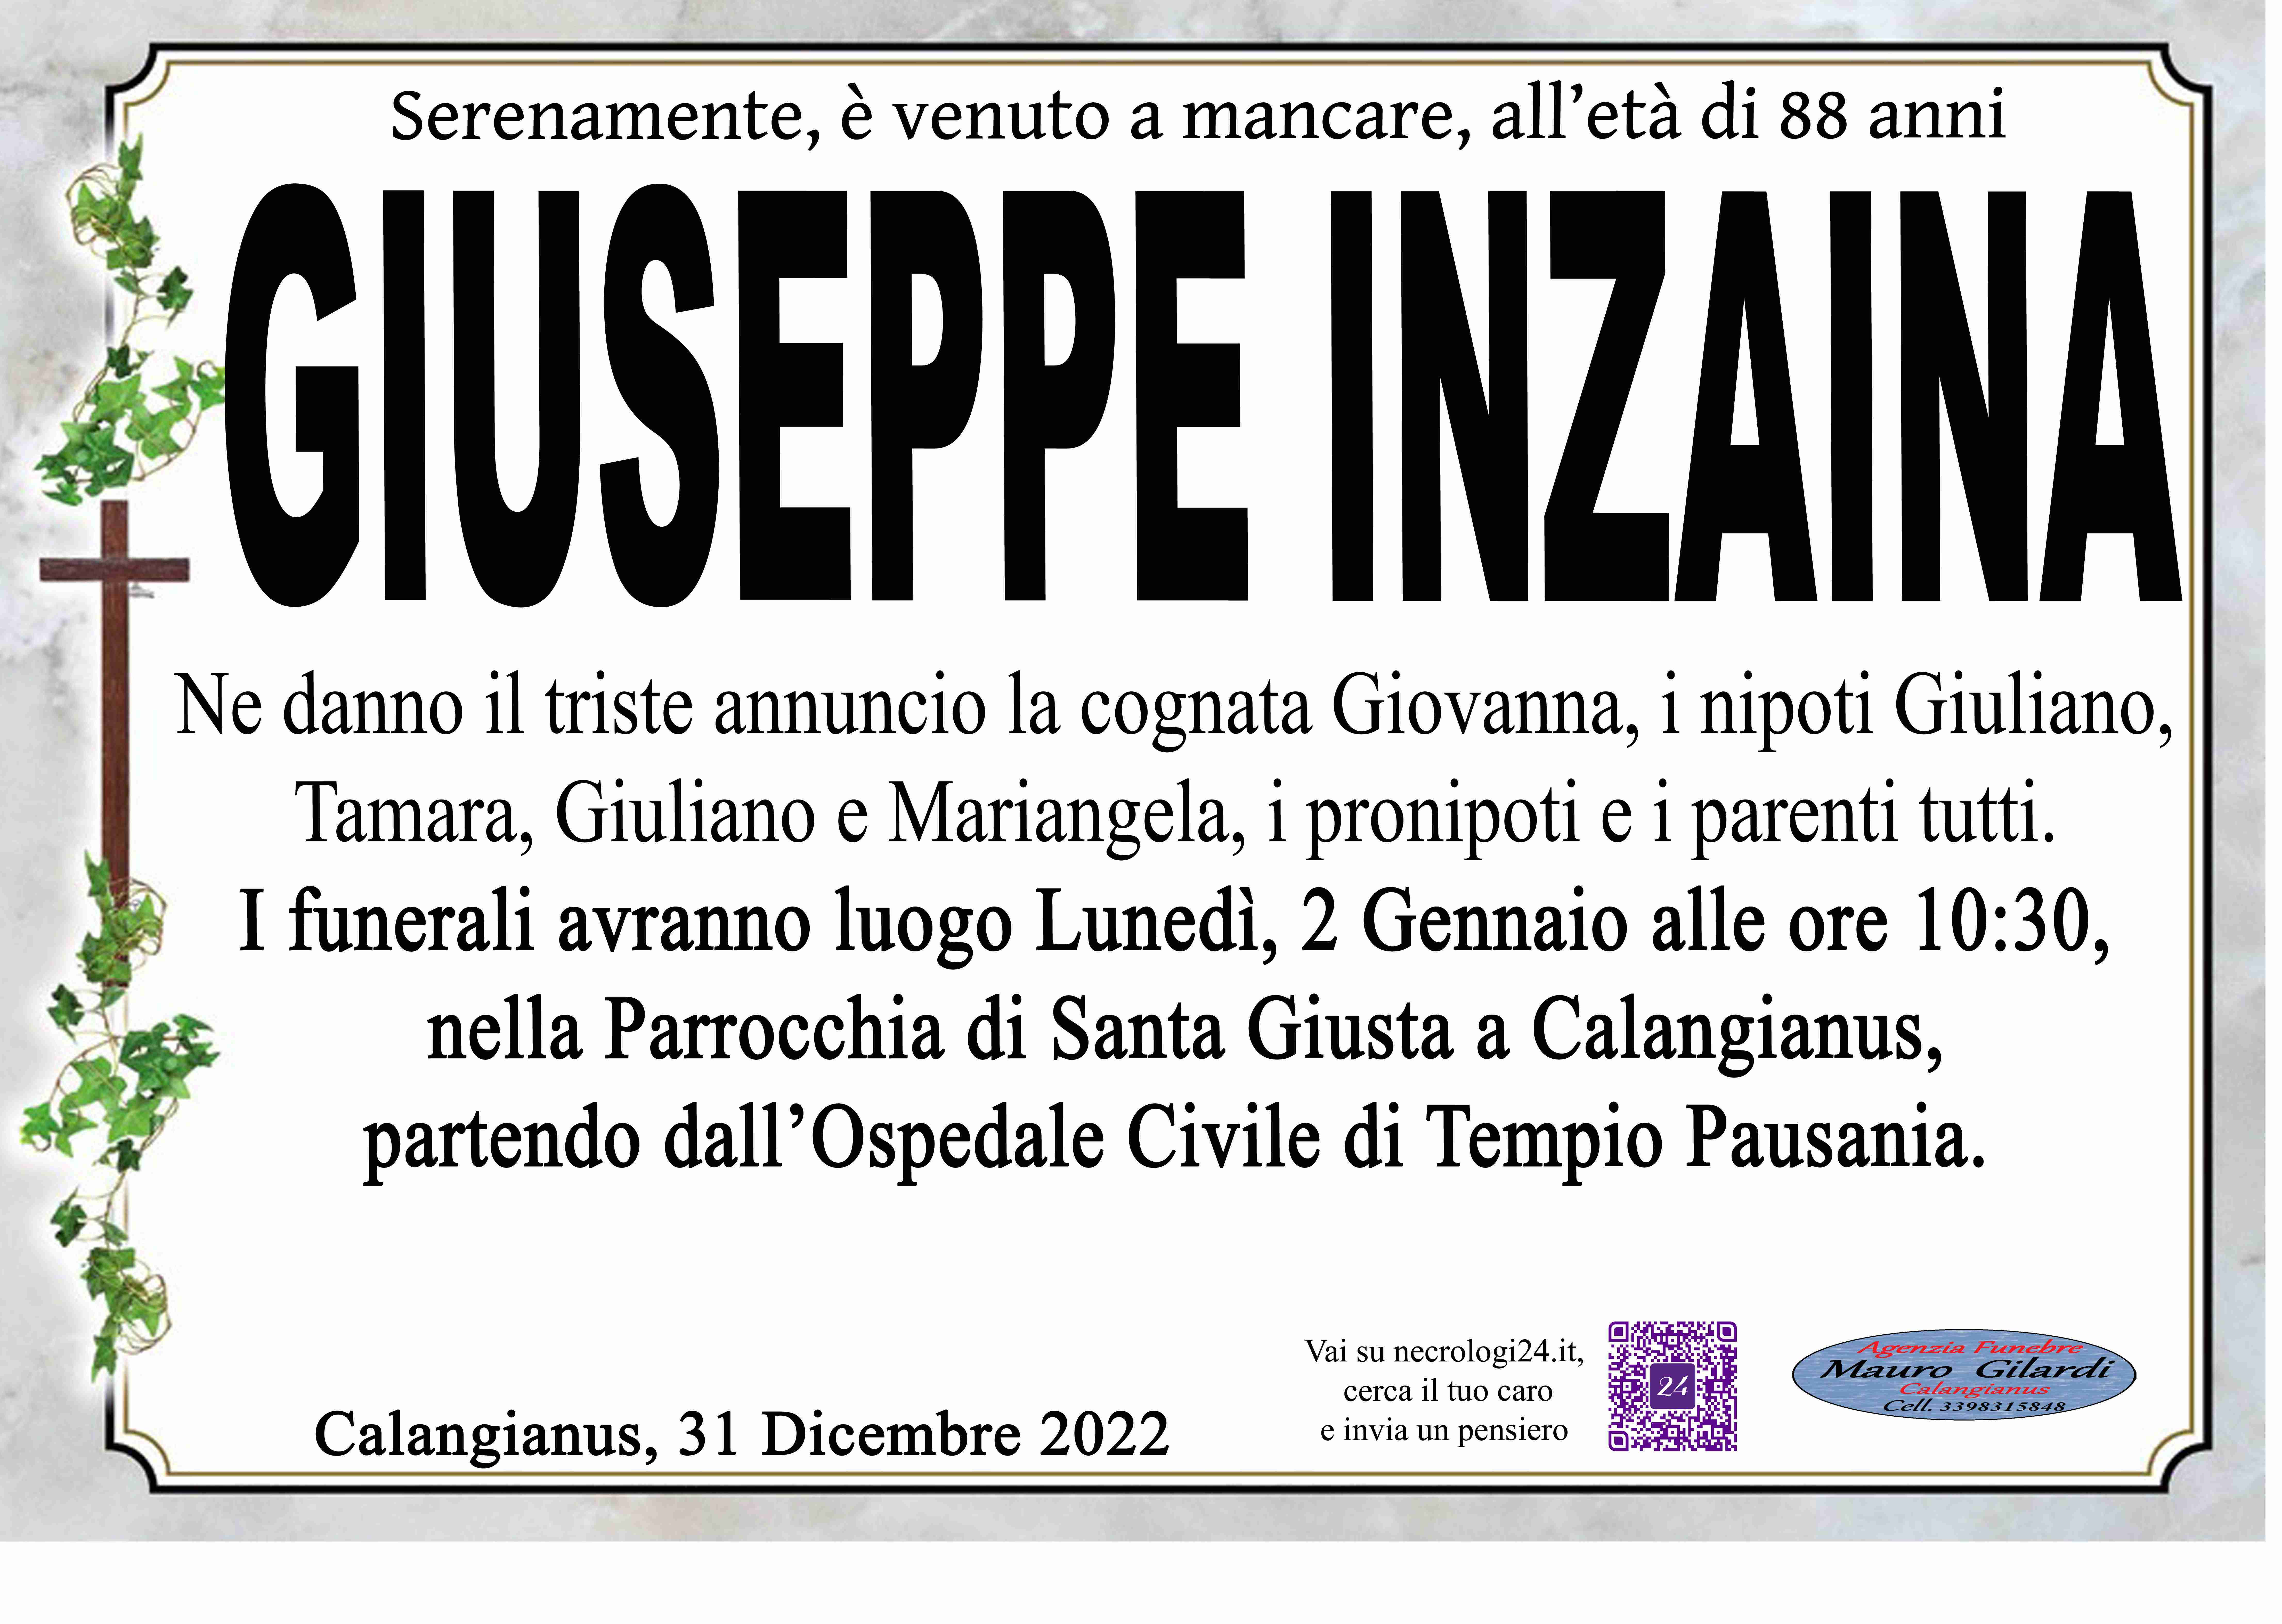 Giuseppe Inzaina